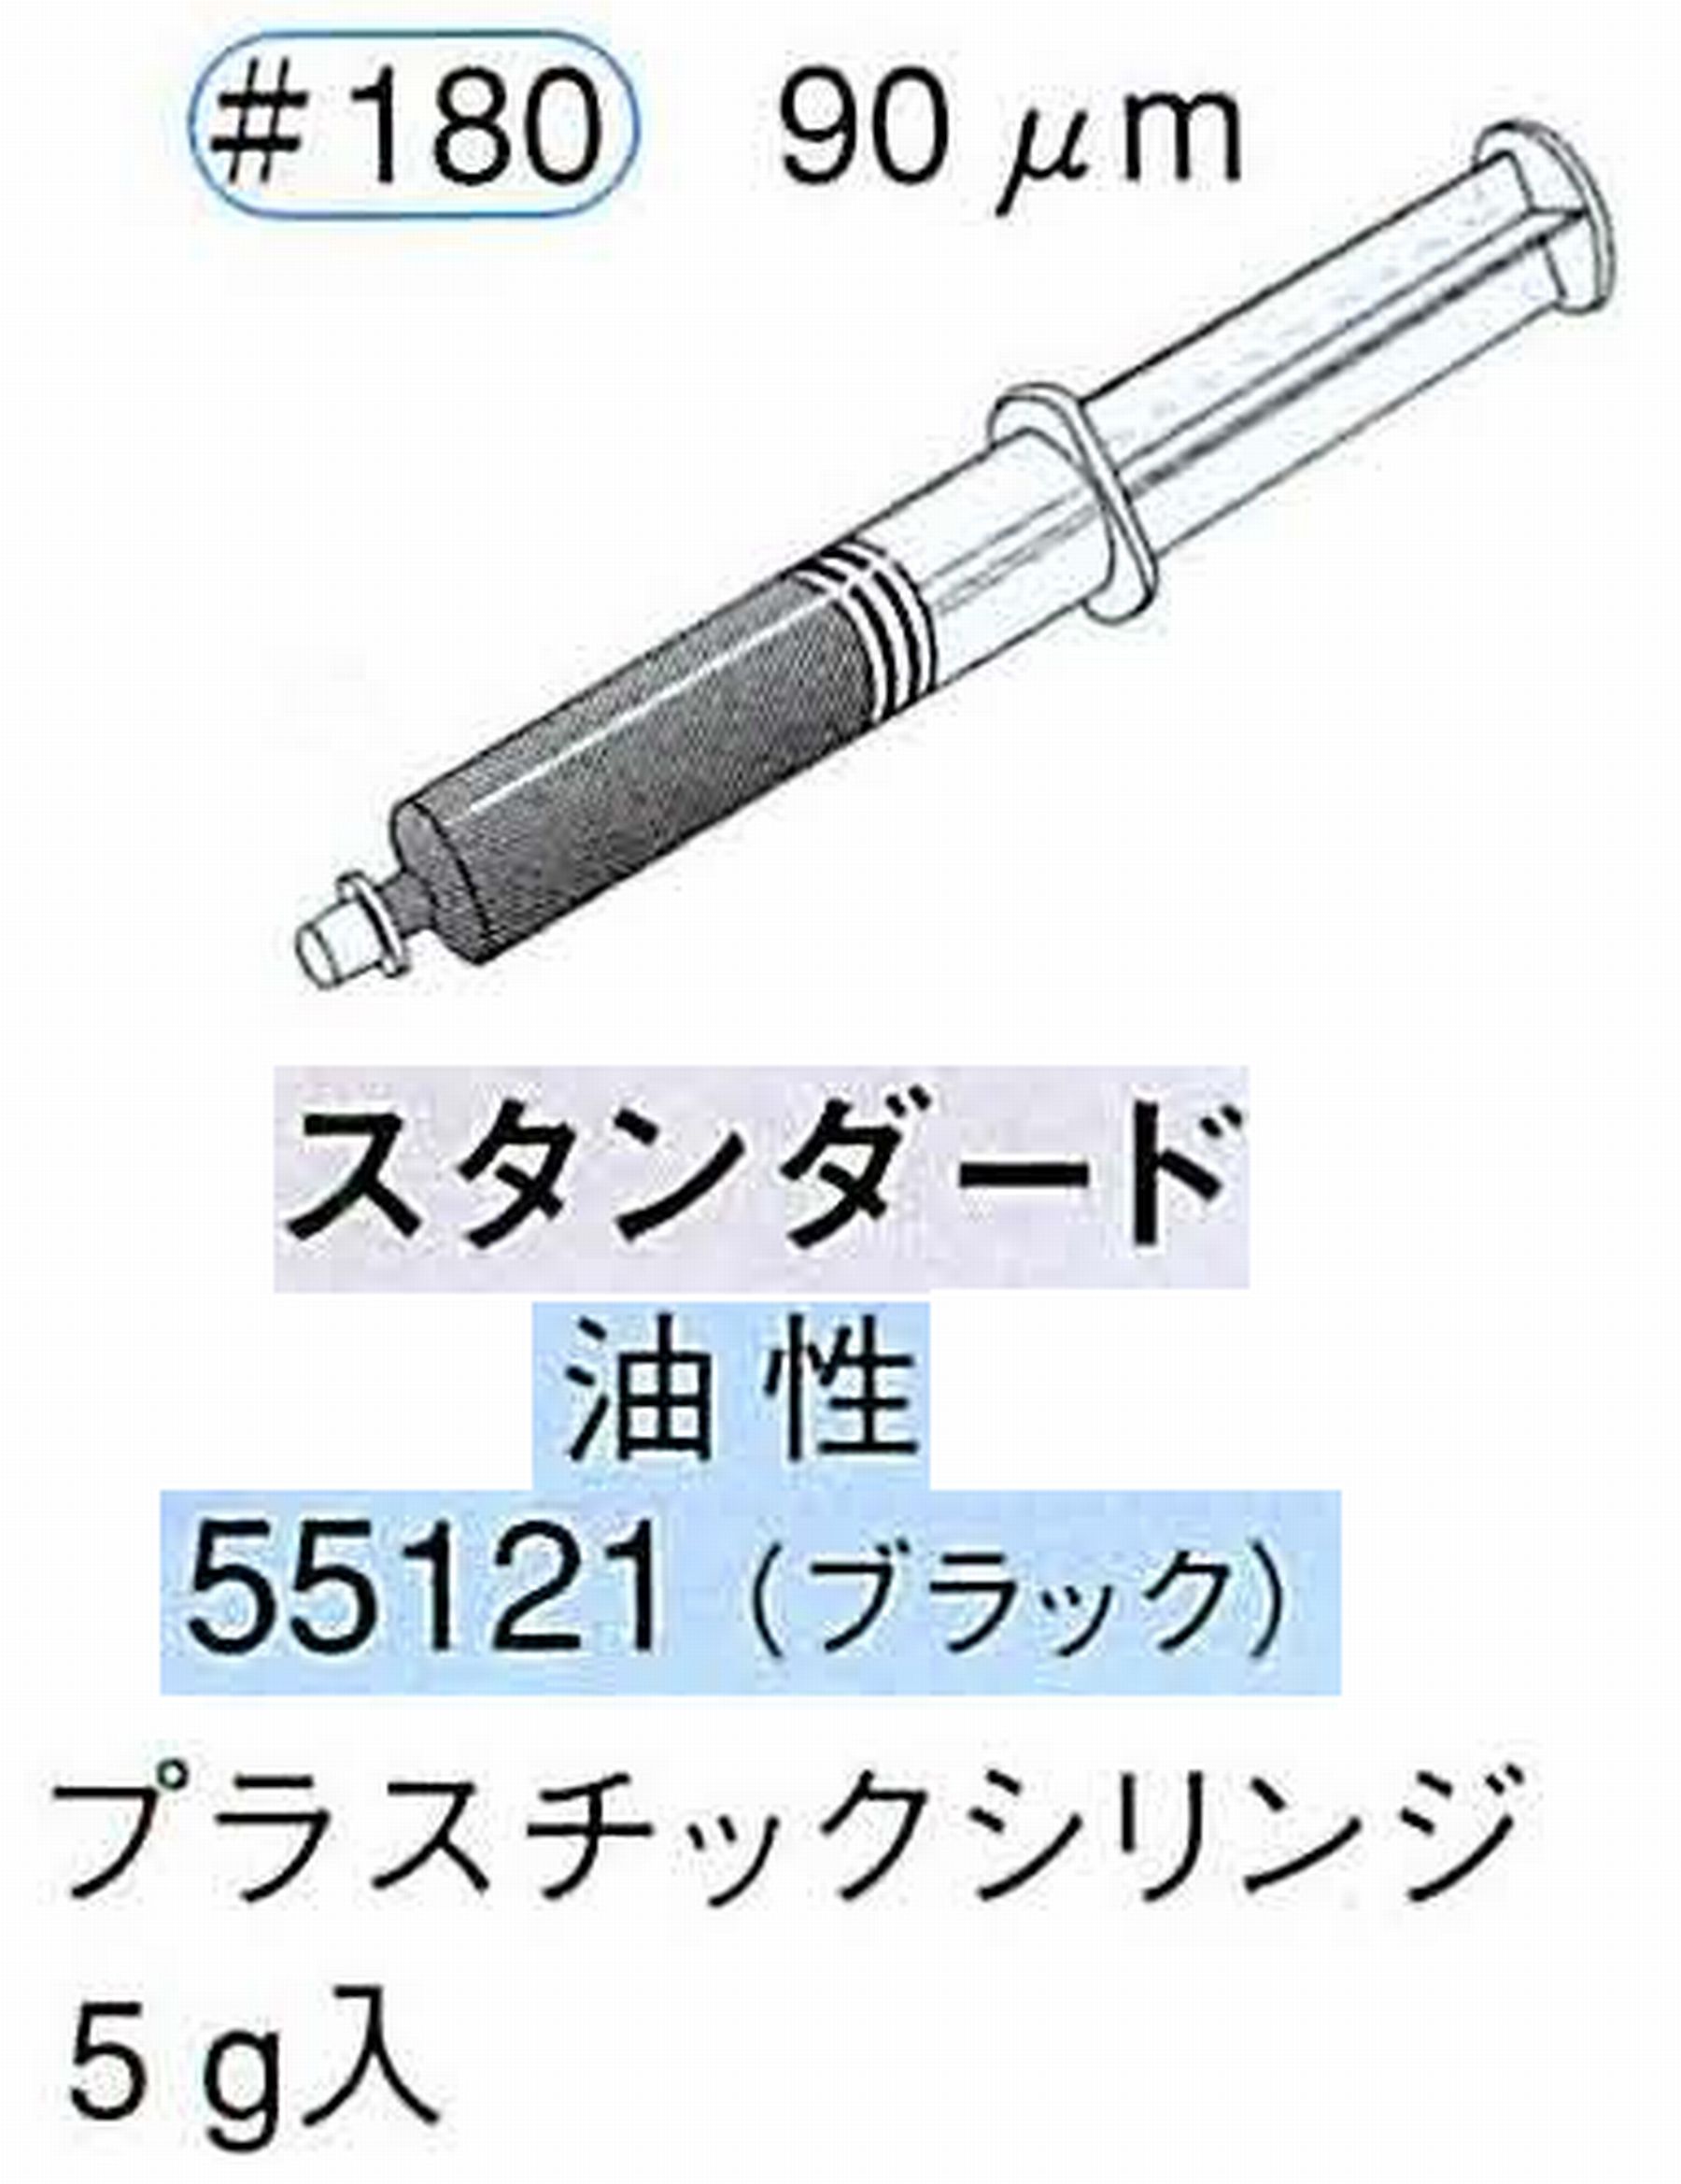 ナカニシ/NAKANISHI ダイヤモンドコンパウンド(ペースト)スタンダード油性 ブラック 55121